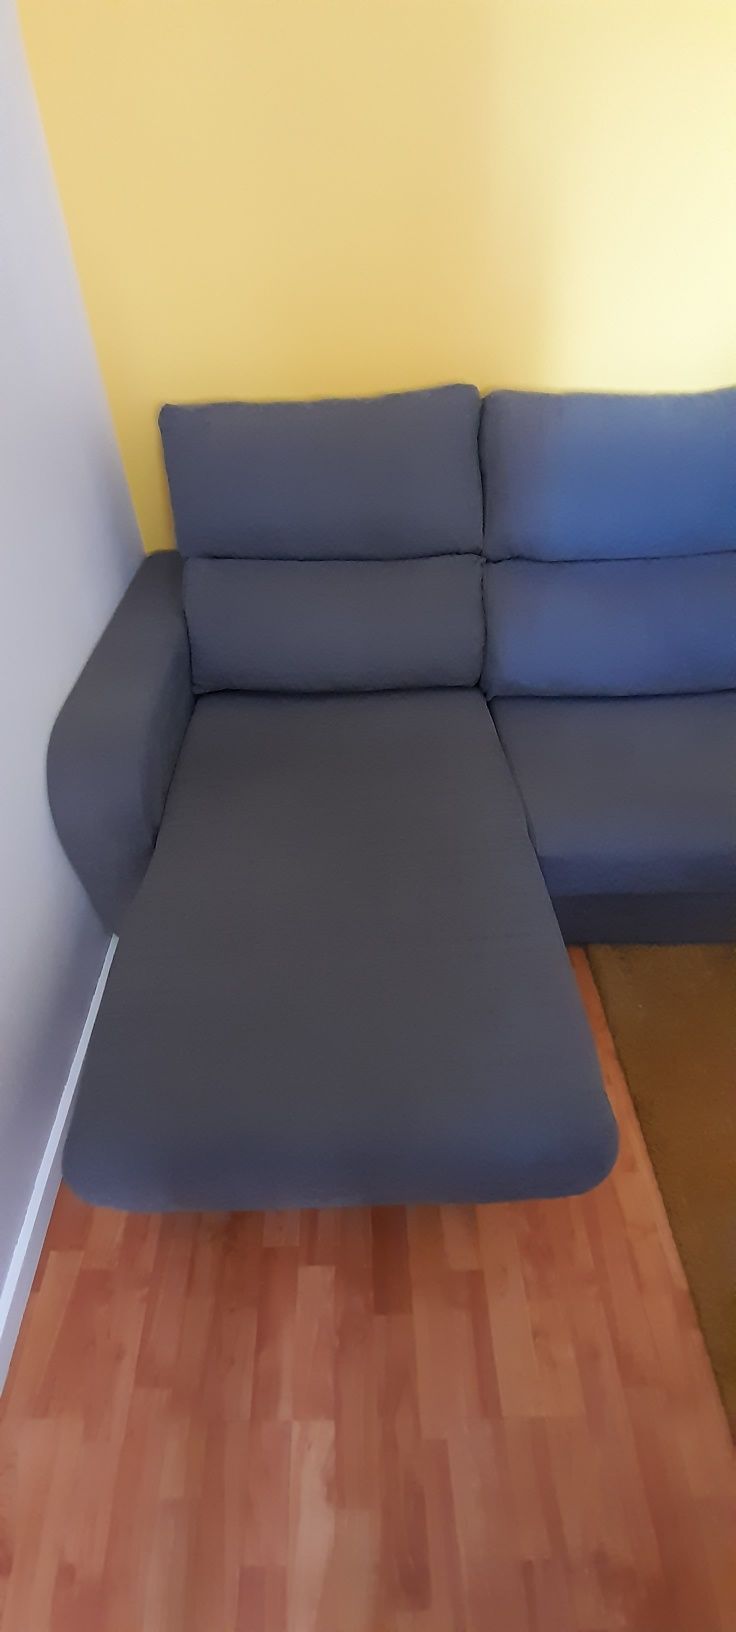 Sofá Chaise long, Modelo APRIL de Conforama convertível em cama